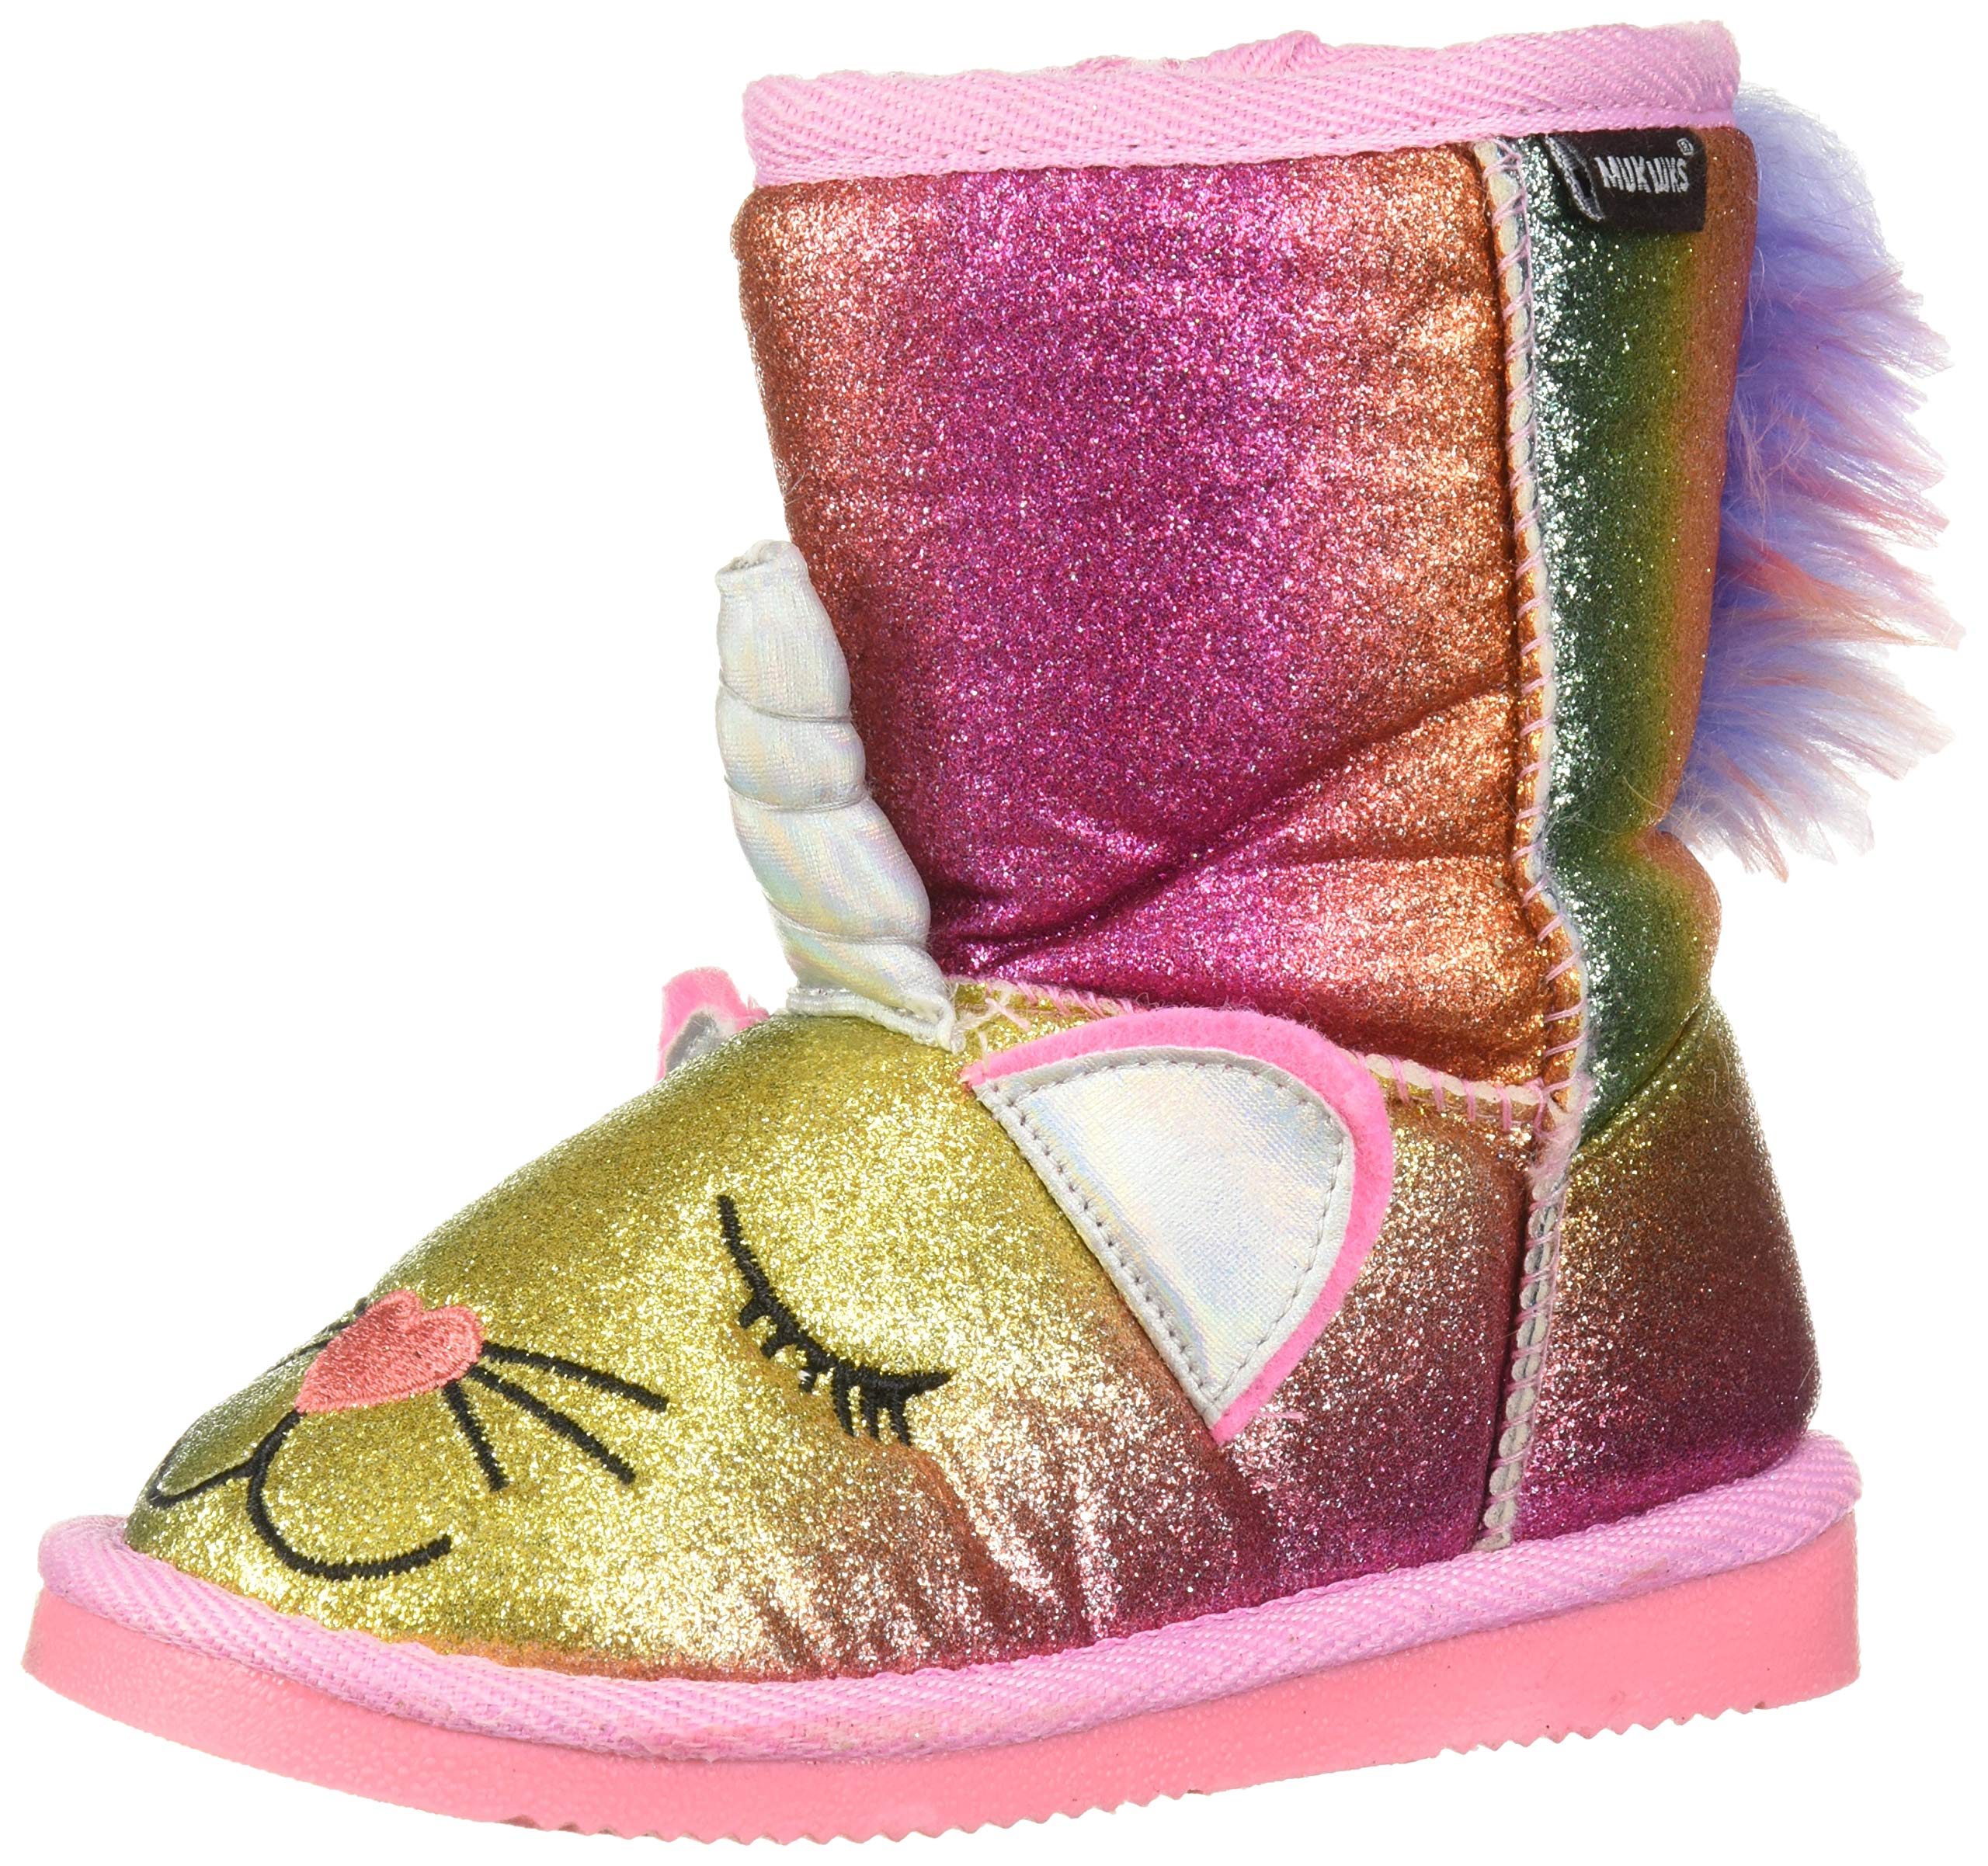 MUK LUKS Unisex-Child Kid's Averly Unikitten Boots Fashion